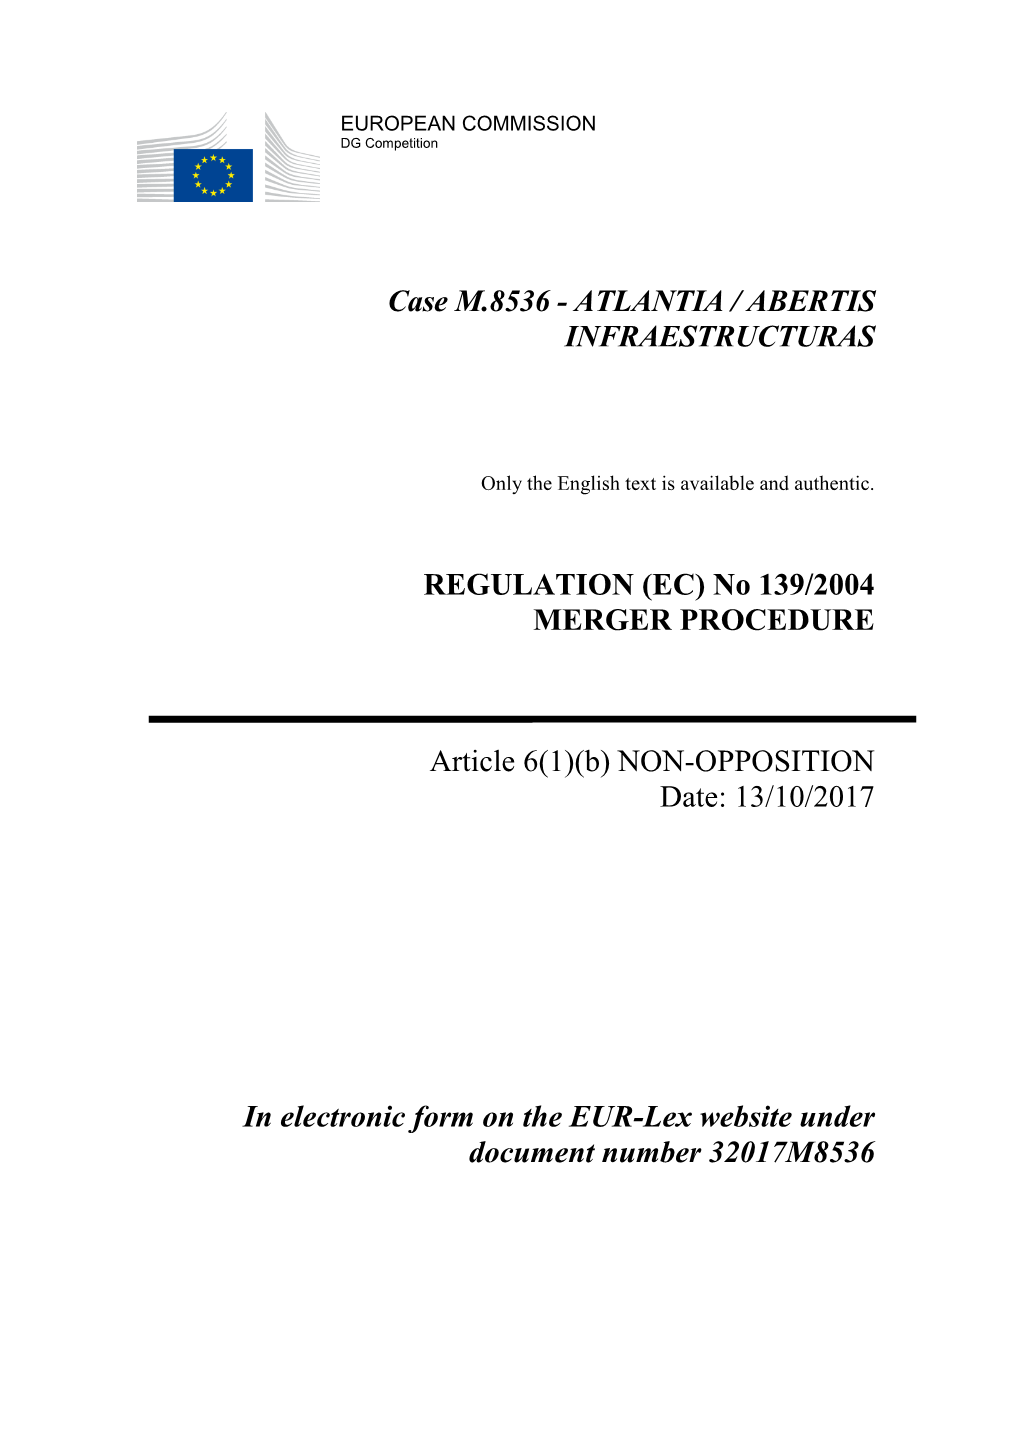 Case M.8536 - ATLANTIA / ABERTIS INFRAESTRUCTURAS